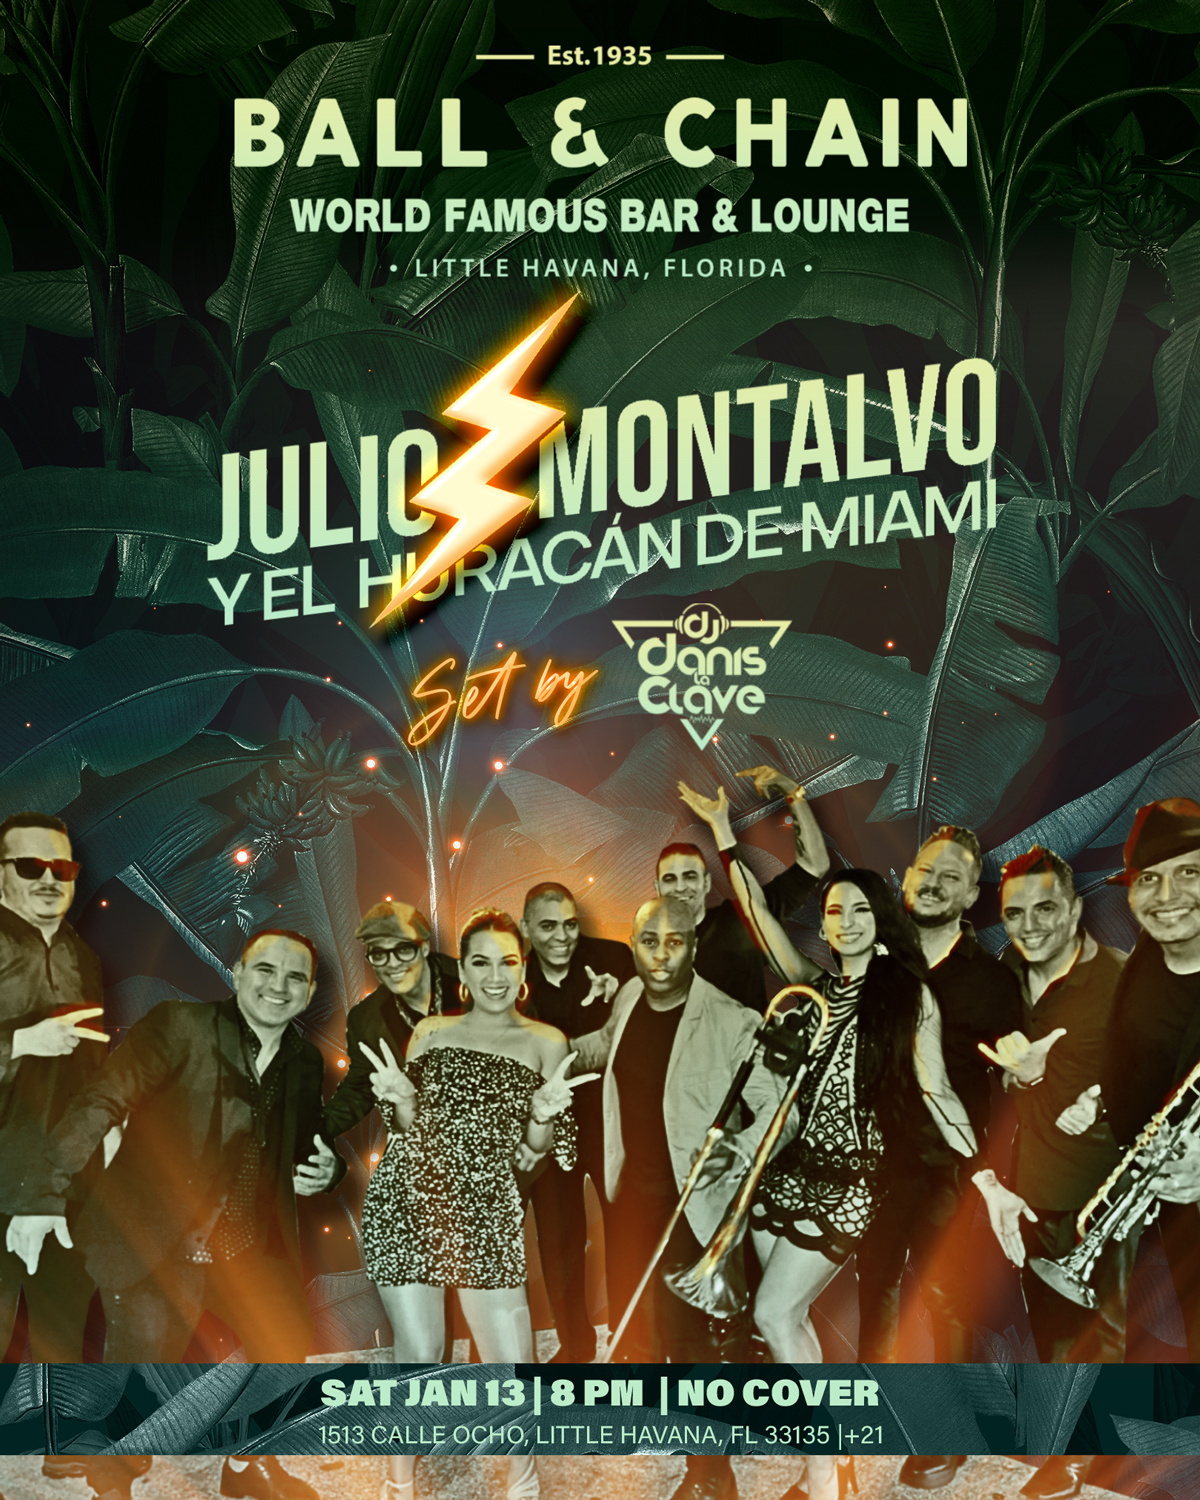 Julio Montalvo y el Hurrican de Miami at Ball & Chain in Miami